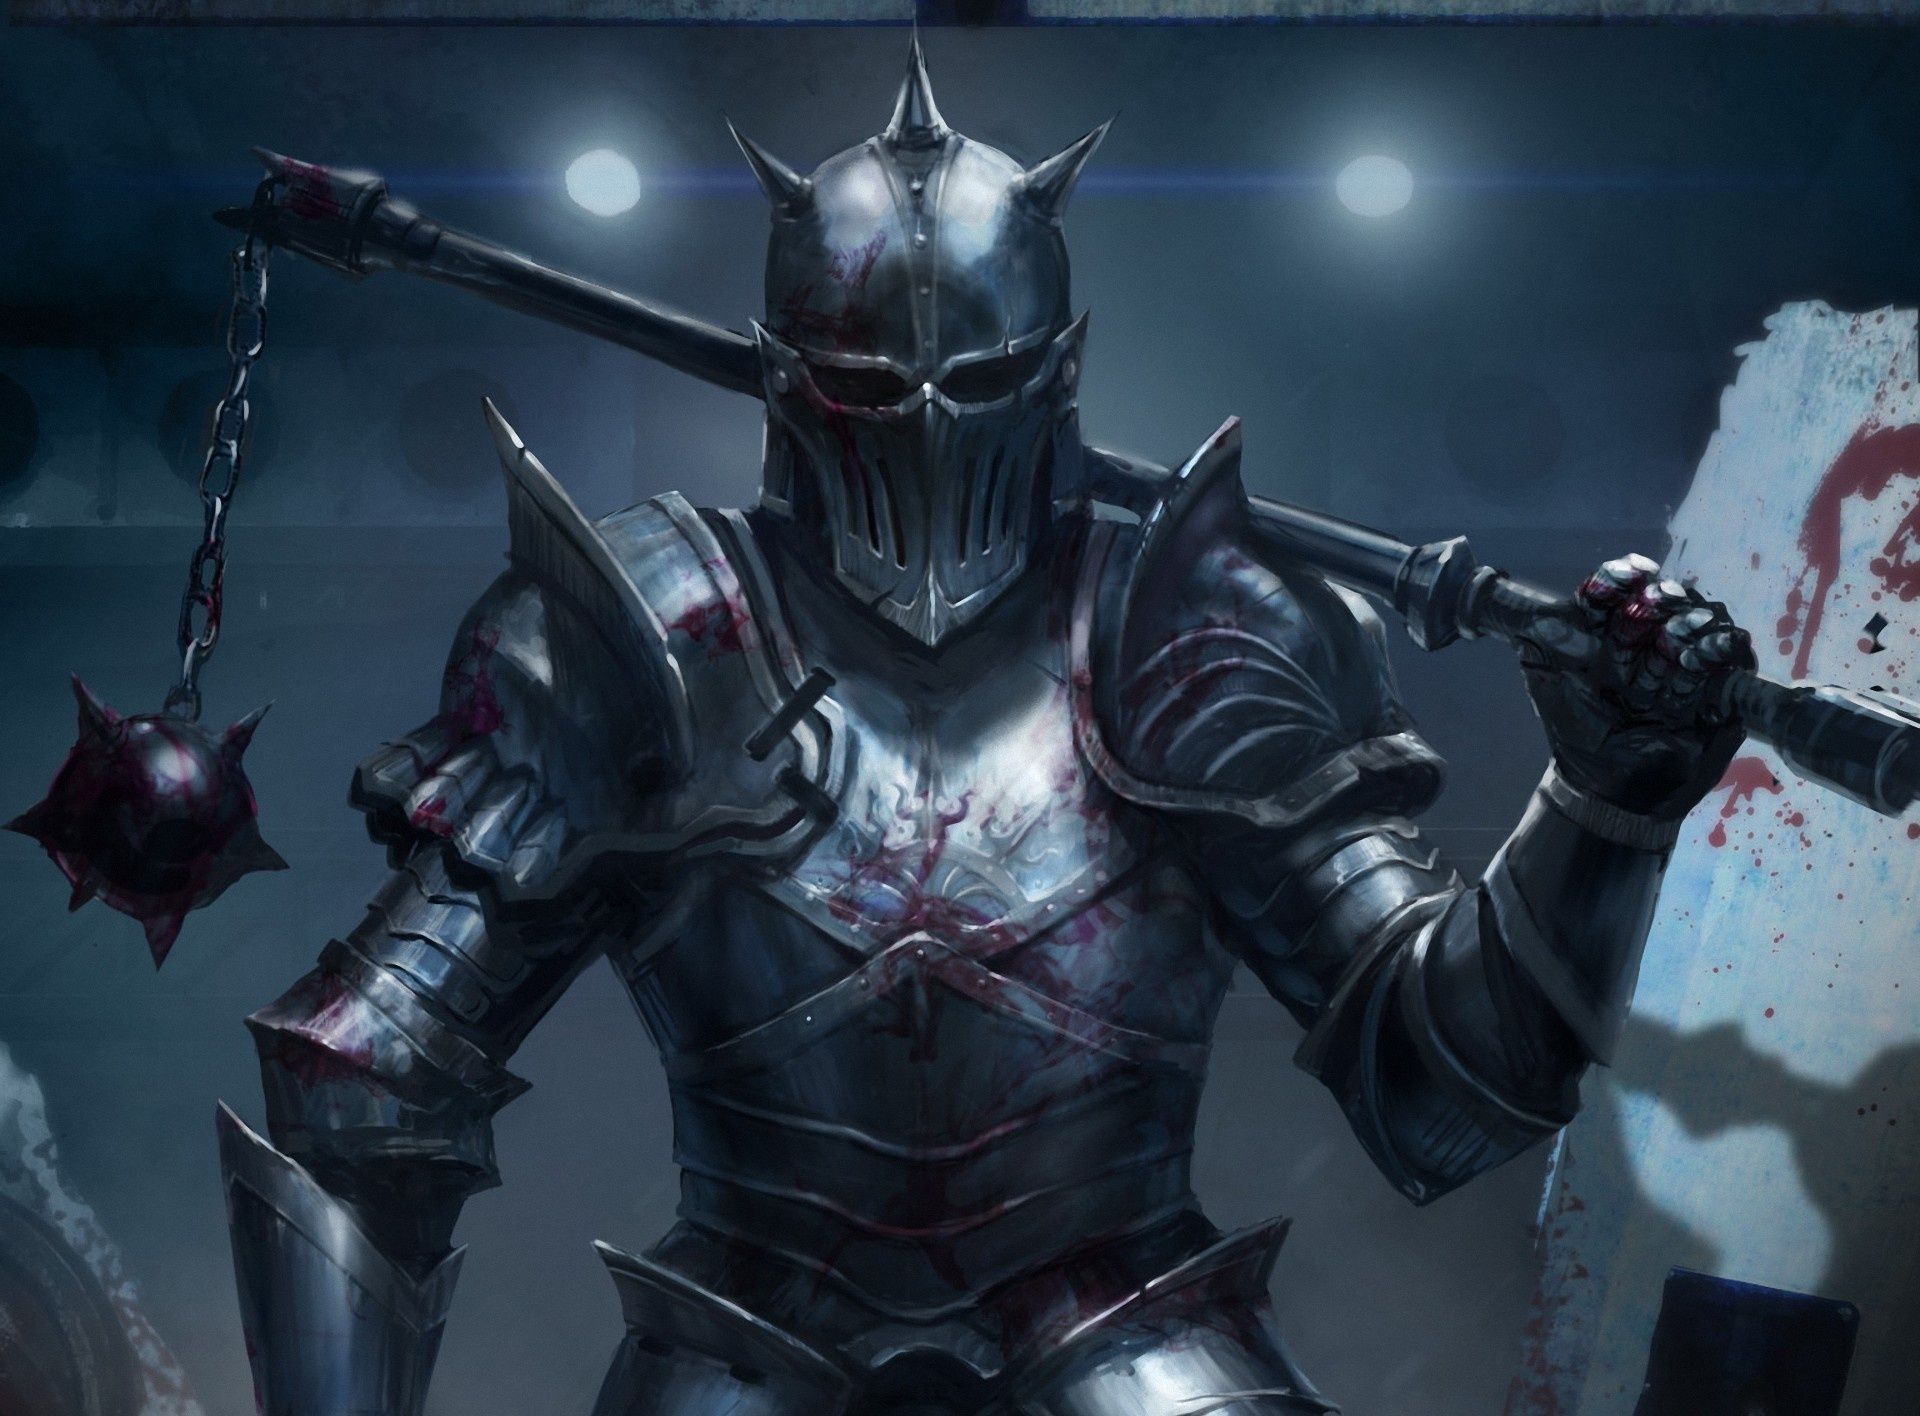 Armor knight man art warrior wallpaperx1416